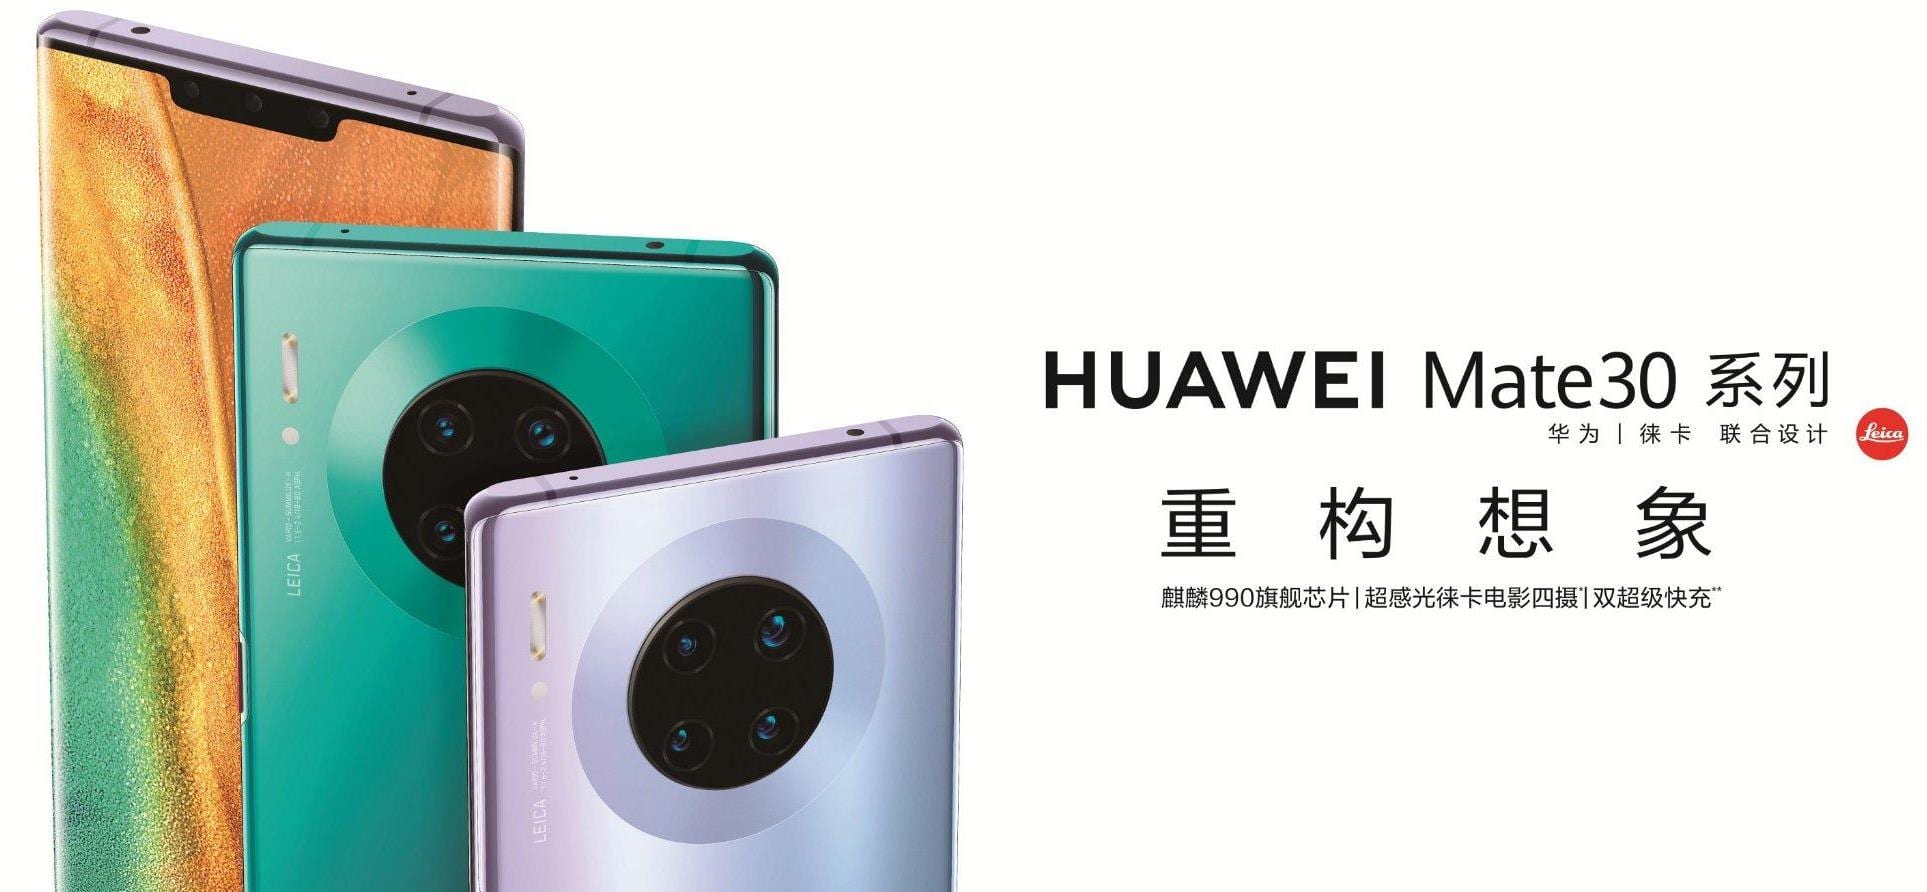 Huawei Mate 30 și Mate 30 Pro au fost lansate, vin cu 5G și sistem de patru camere